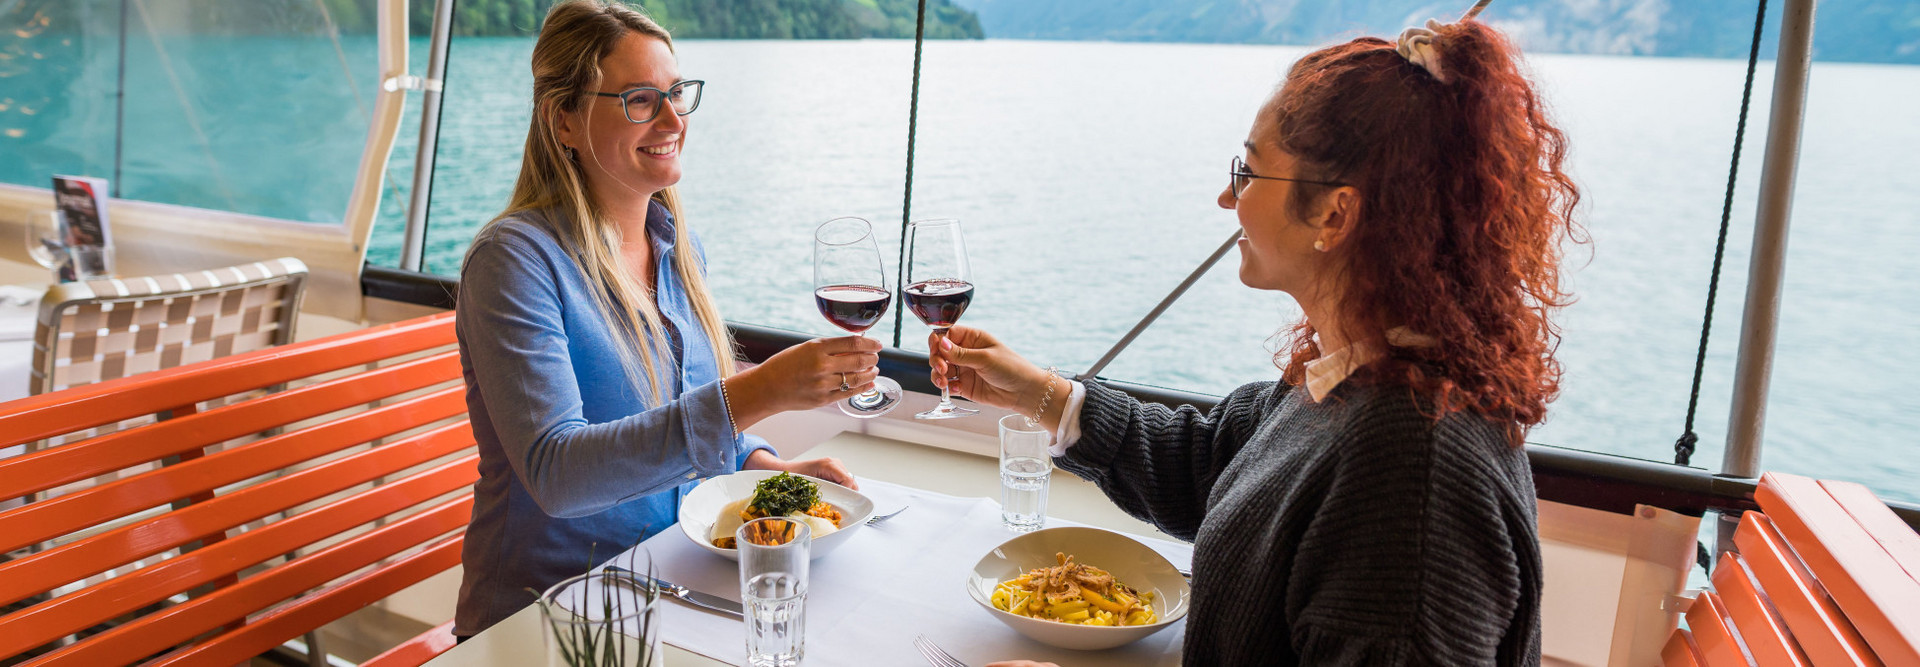 Zwei junge Frauen geniessen das Gastronomie Angebot auf dem Schiff und stossen mit einem Glas Rotwein an.